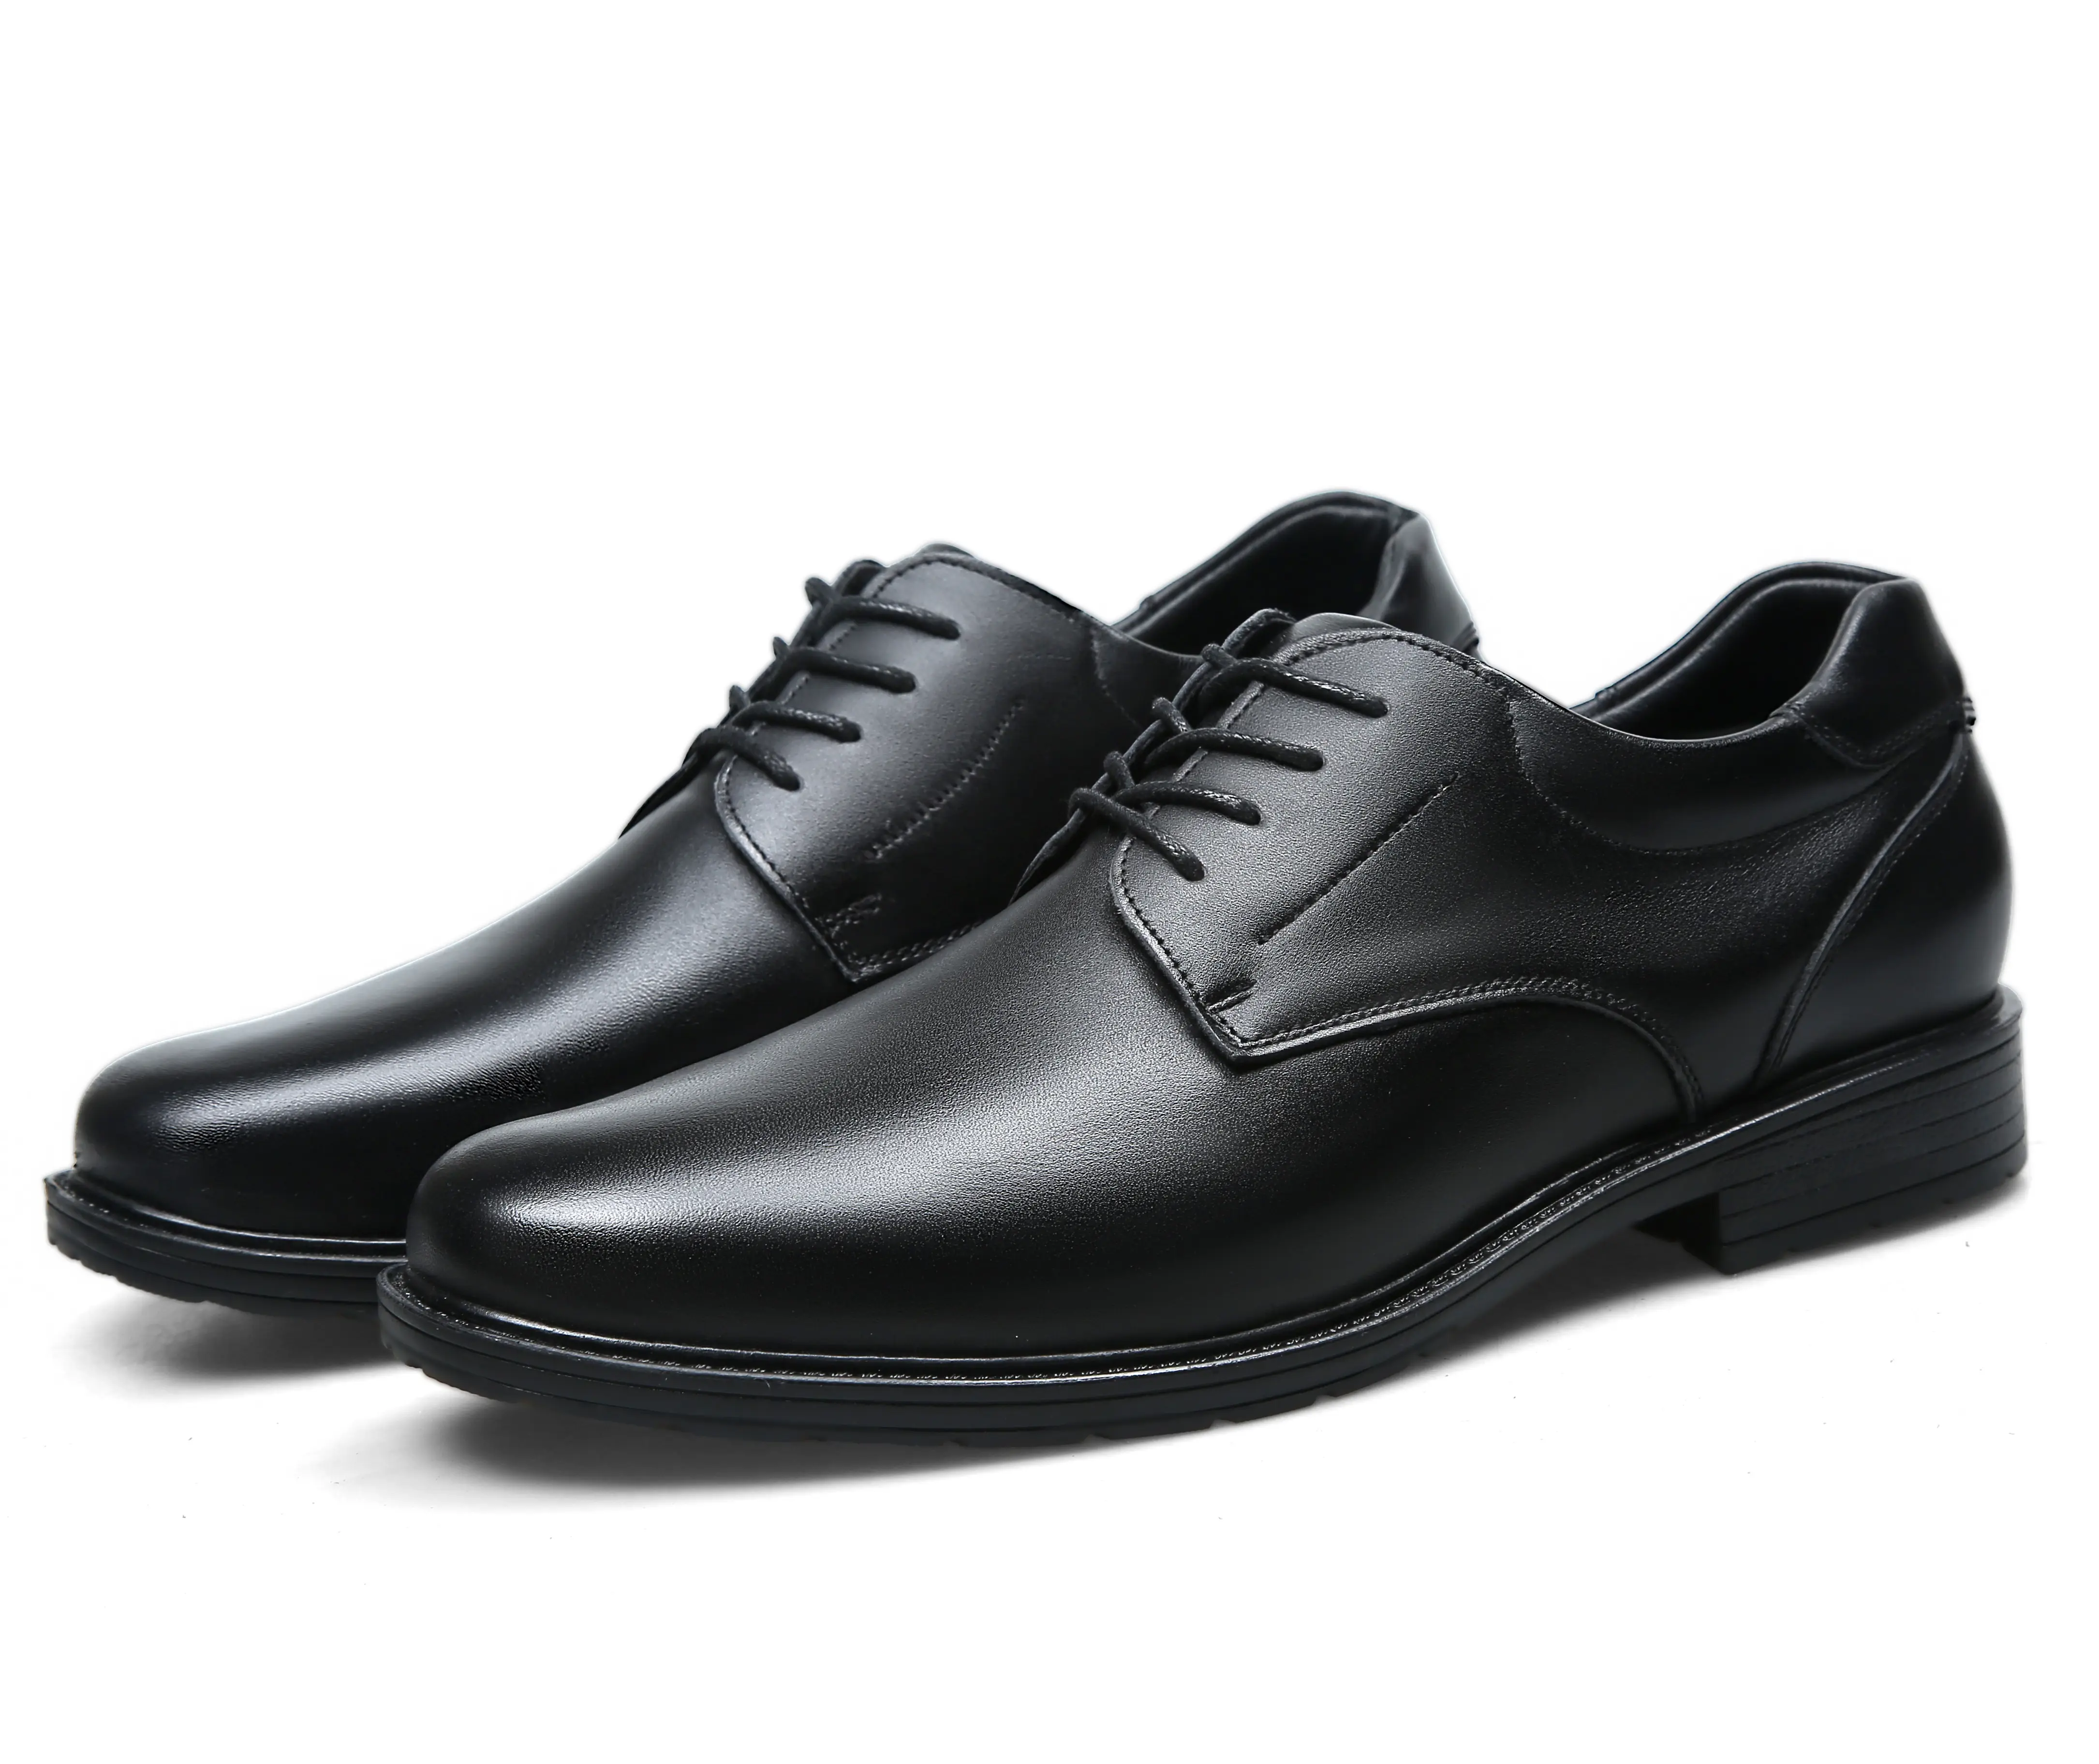 Classic official black leather shoes dress shoes men's men's work boots